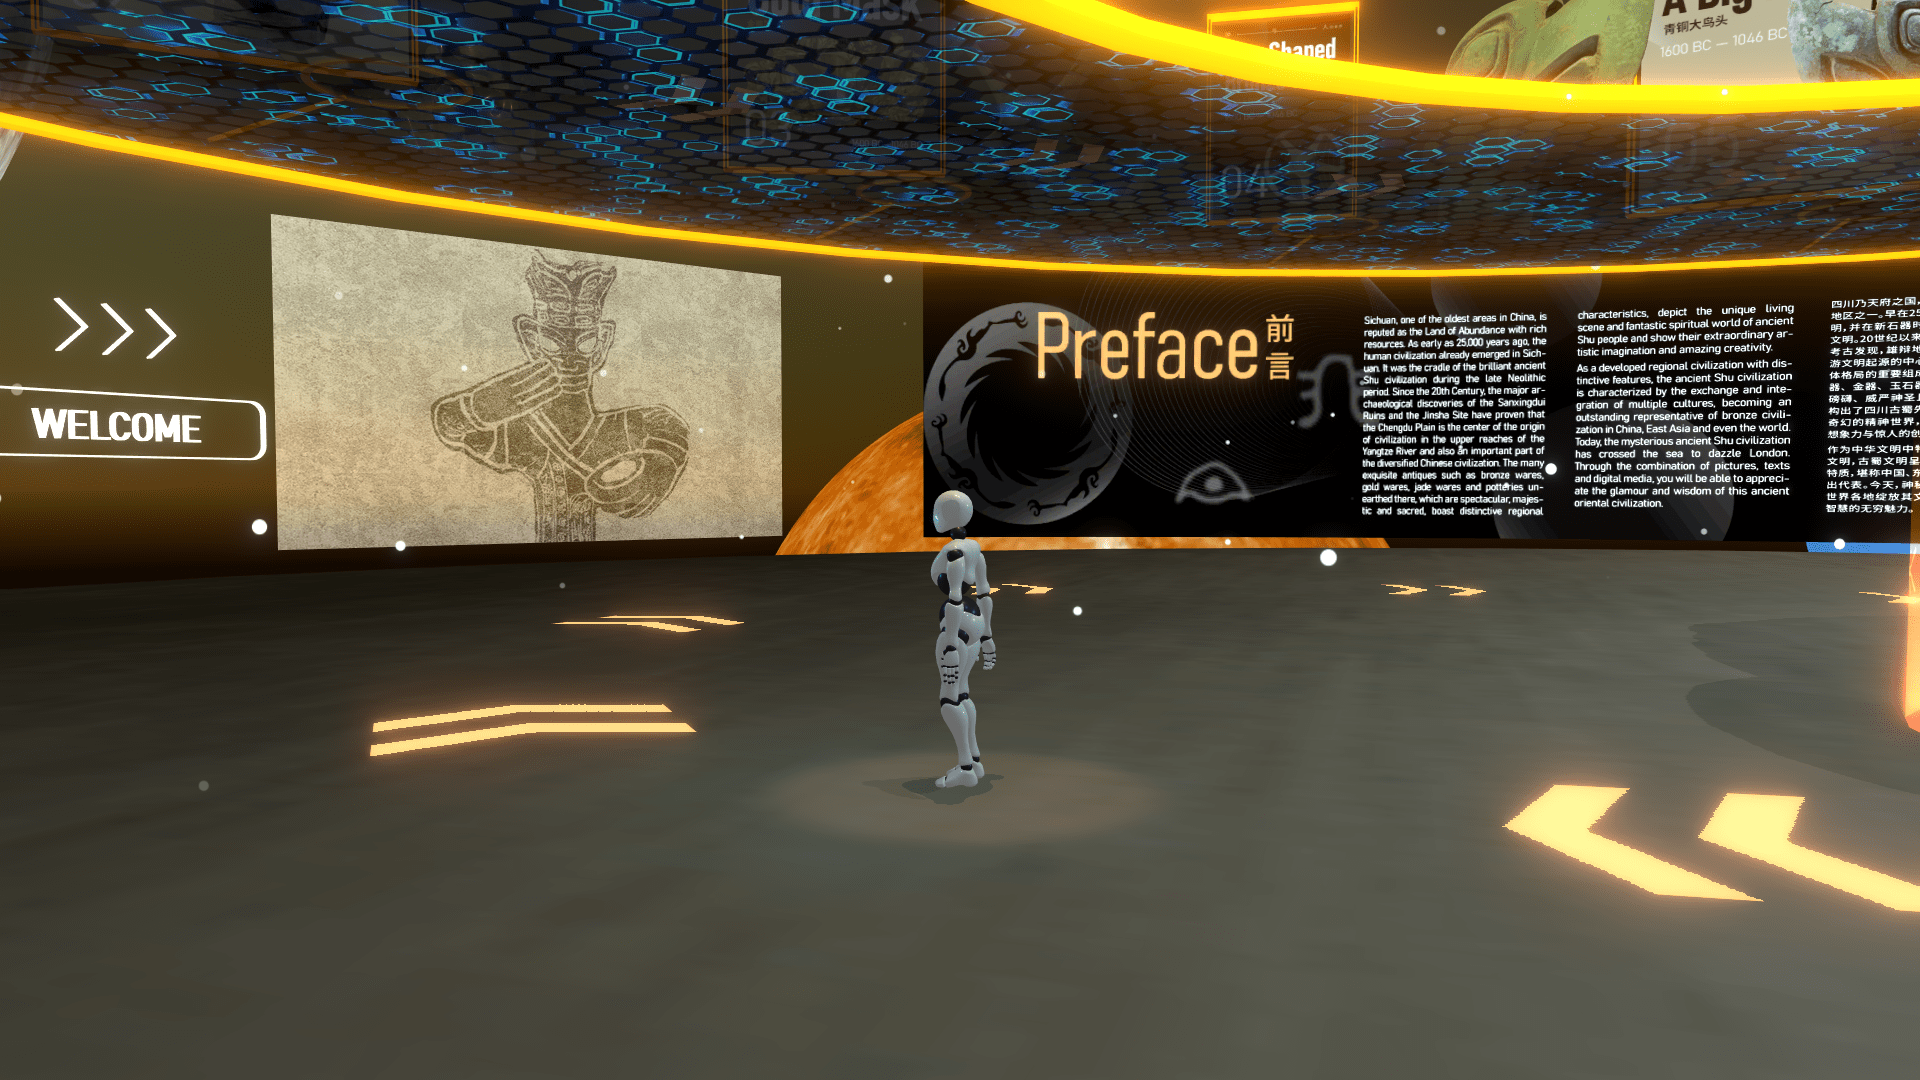 图片展示了一个穿着未来风格服装的角色站在带有文字和图案的展览厅内，四周环绕着橙色灯光和屏幕。